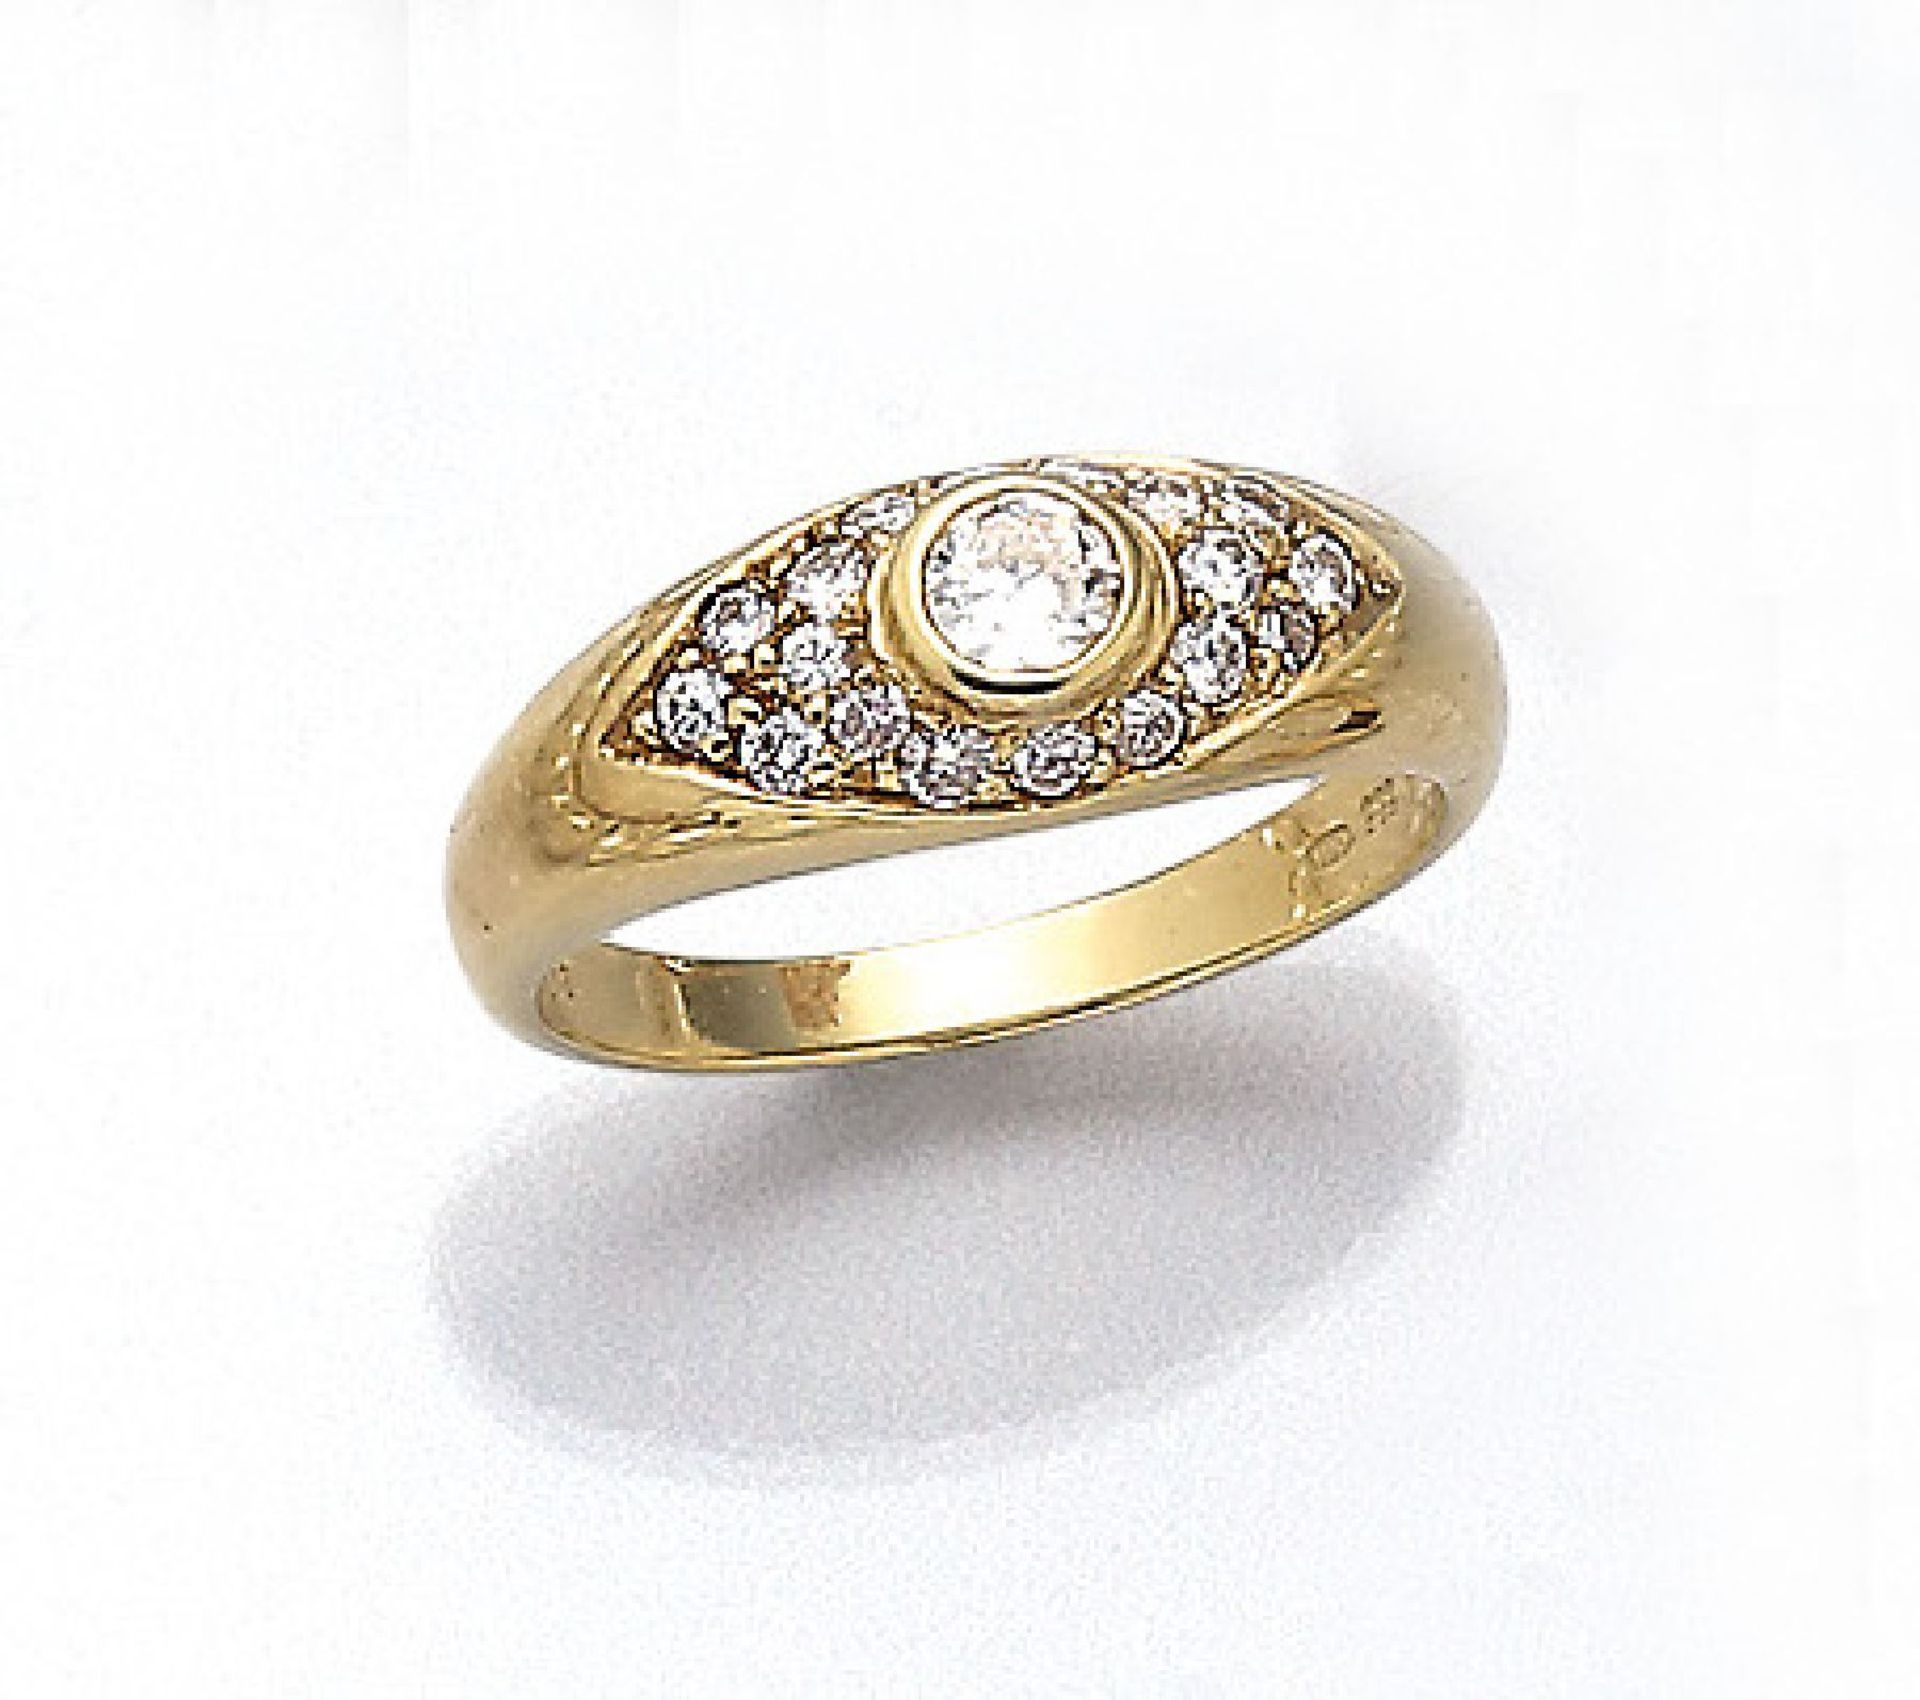 14 kt Gold Ring mit Brillanten, GG 585/000,Brillanten zus. ca. 0.66 ct Weiß/si, RW 56, ca. 4.5 g14